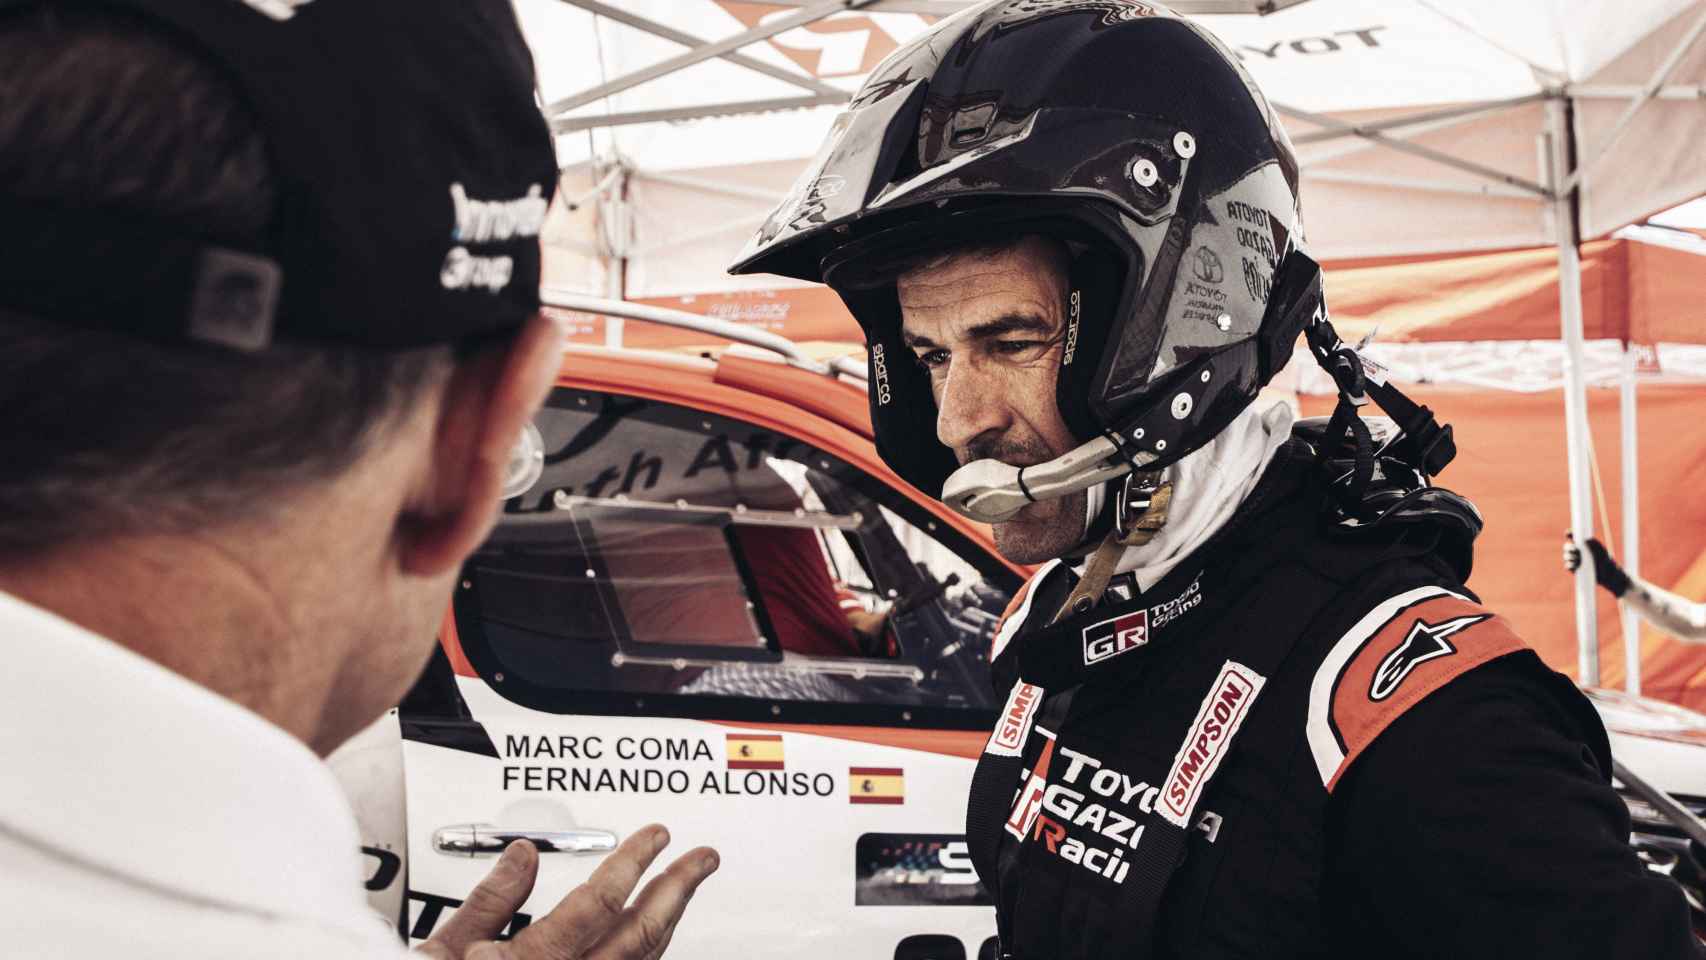 Marc Coma durante los test con Fernando Alonso previos al Dakar 2020